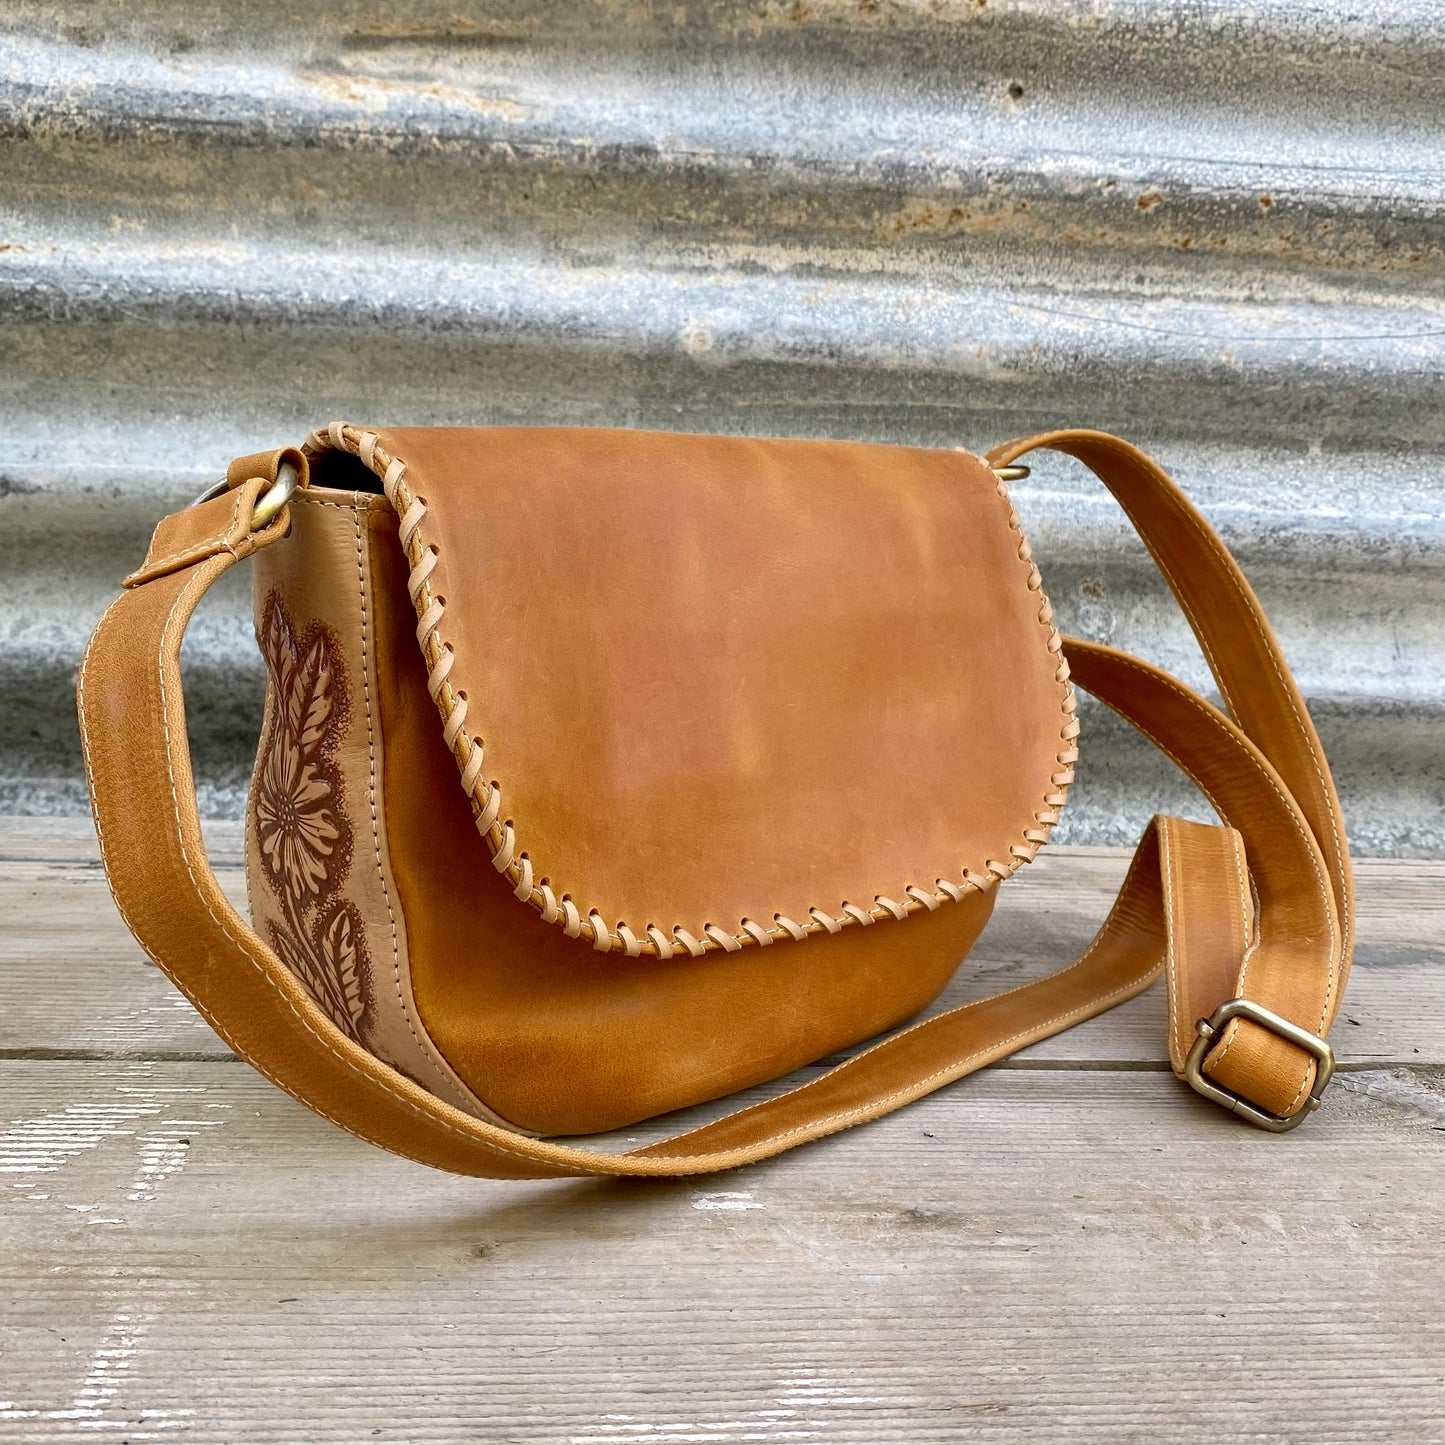 Carved Leather Handbag